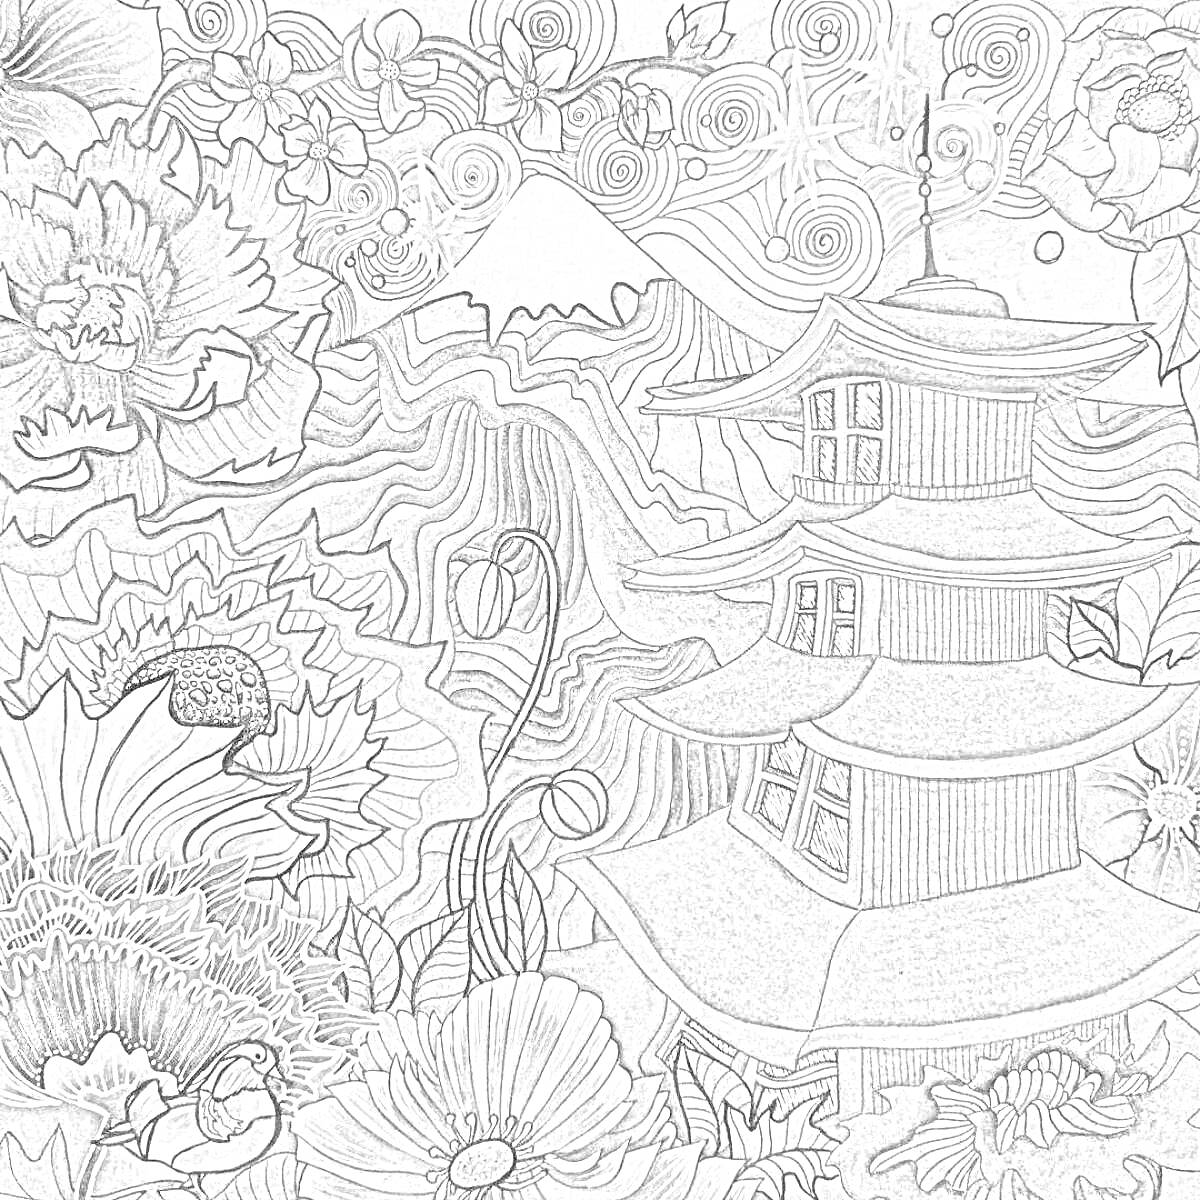 На раскраске изображено: Пагода, Природа, Гора Фудзи, Звезды, Цветы, Волны, Магия, Пейзаж, Япония